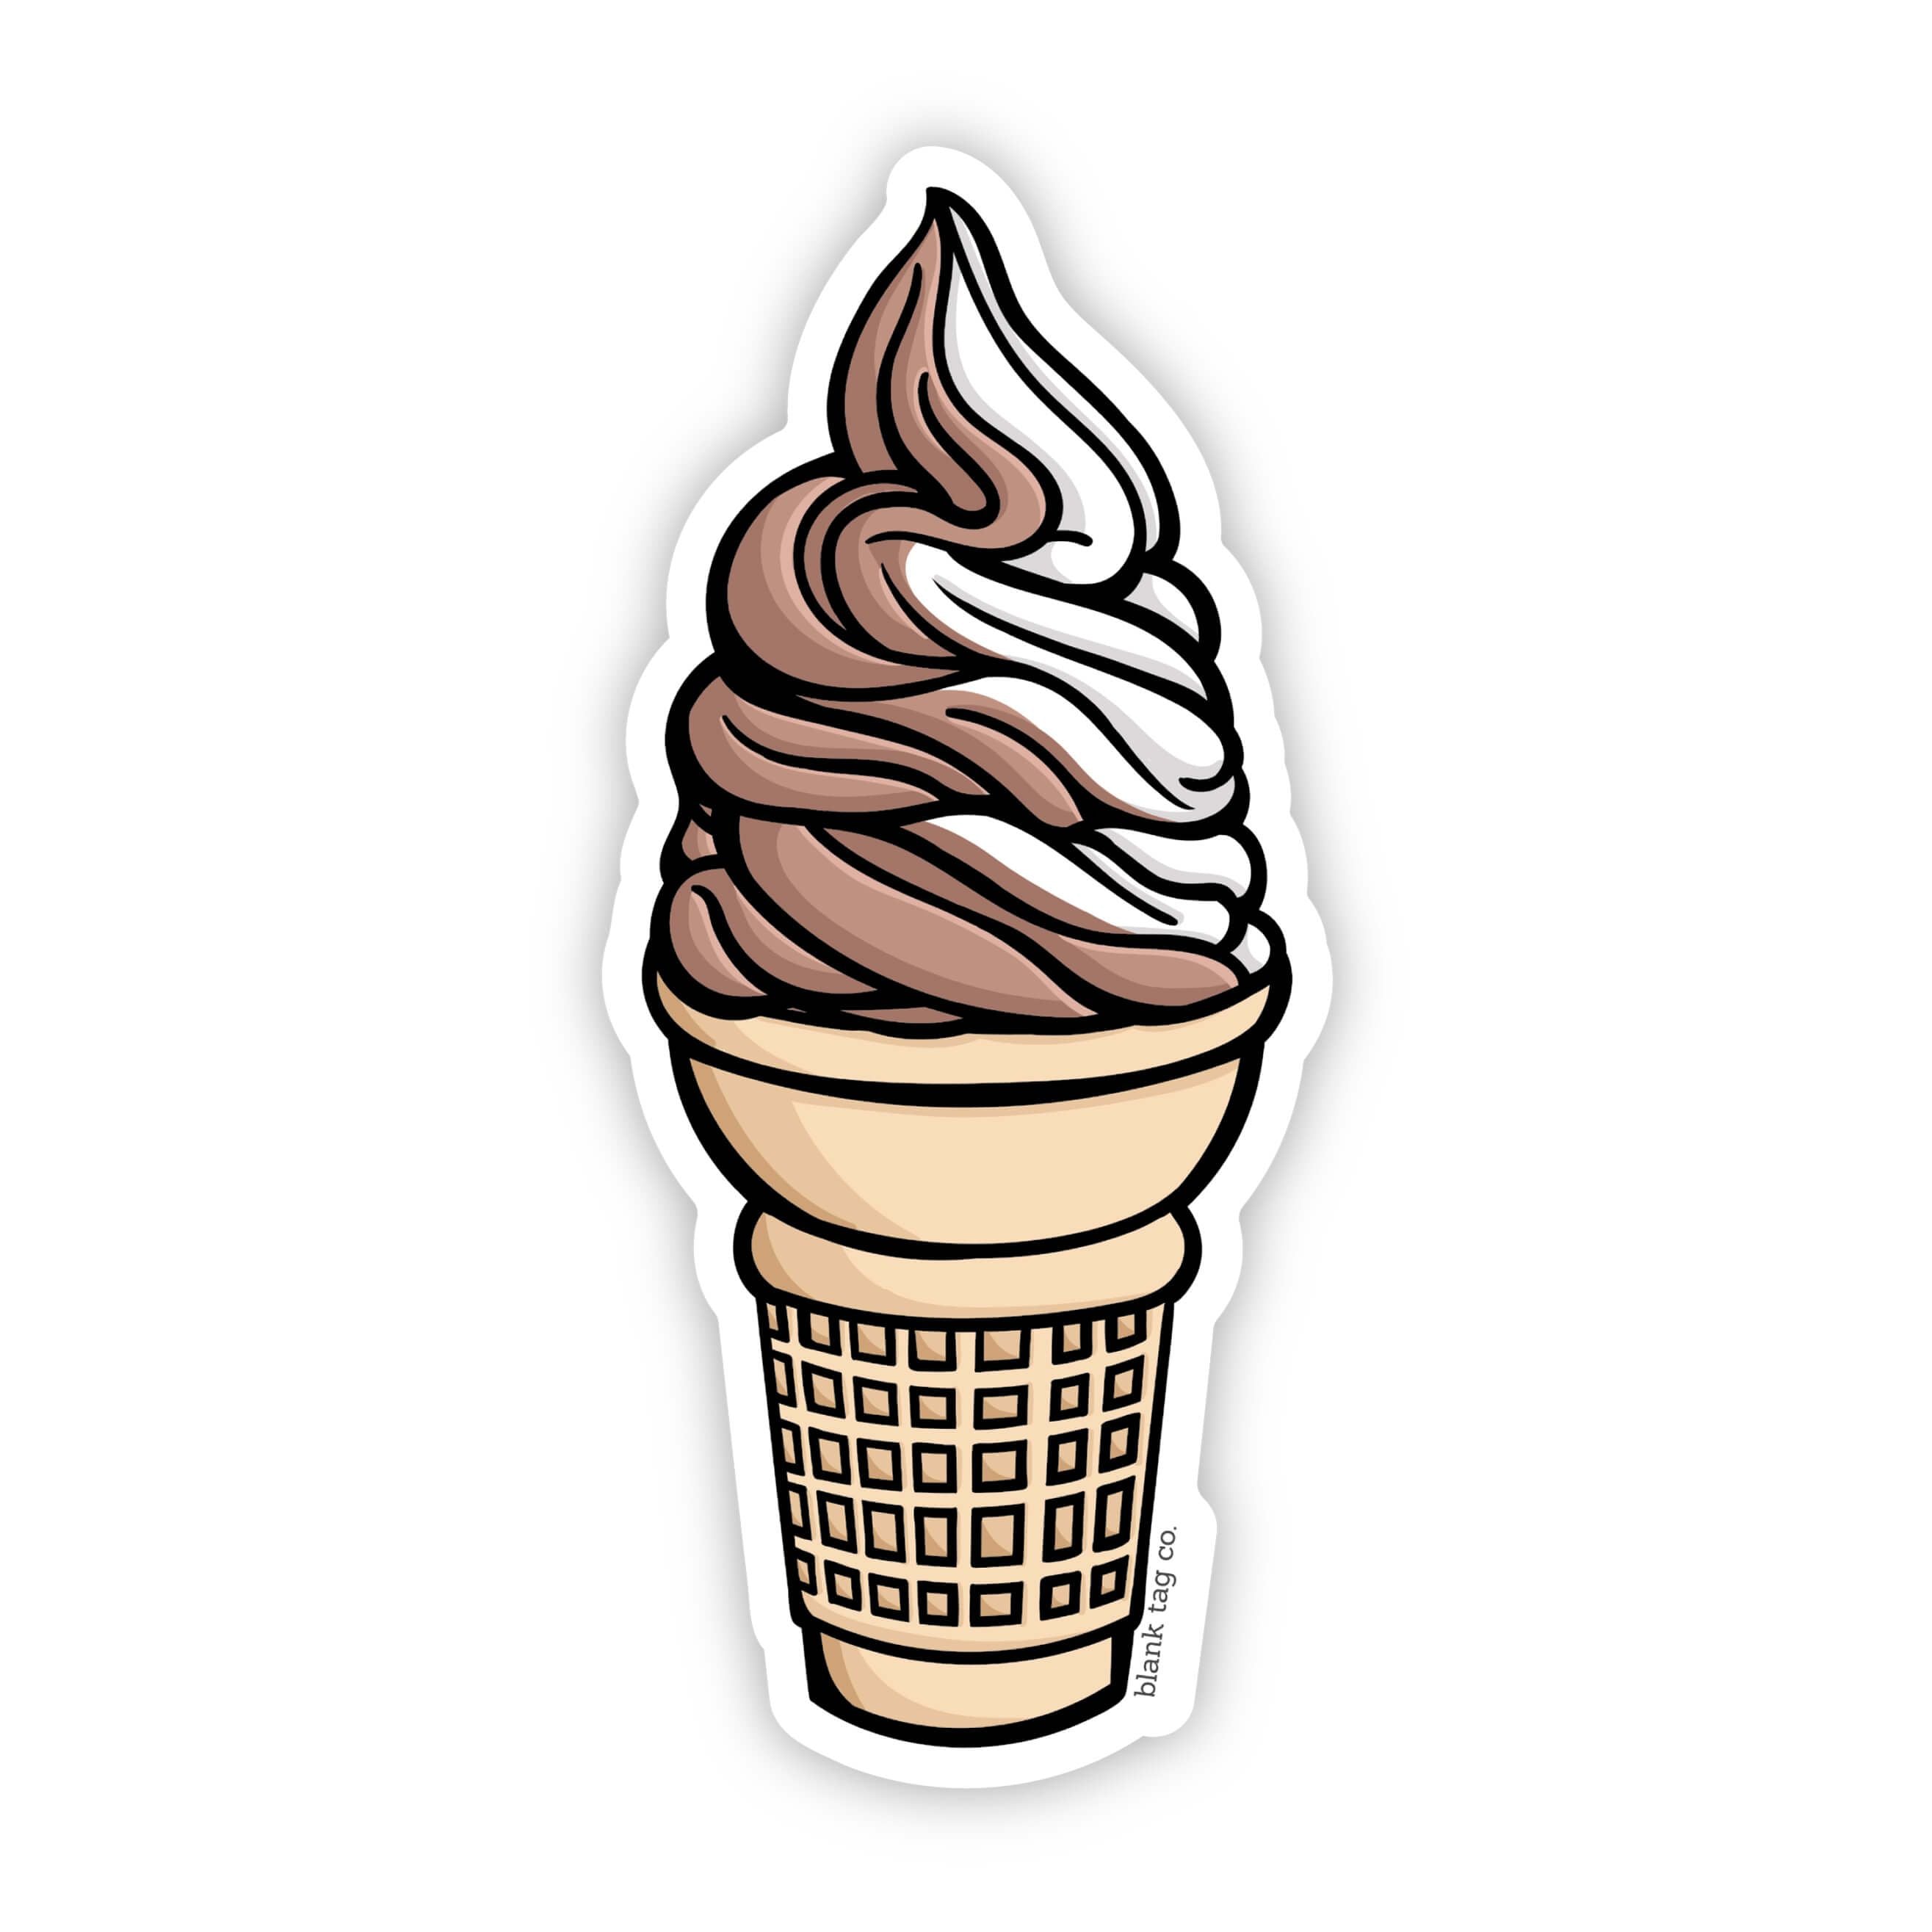 The Swirl Soft Serve Ice Cream